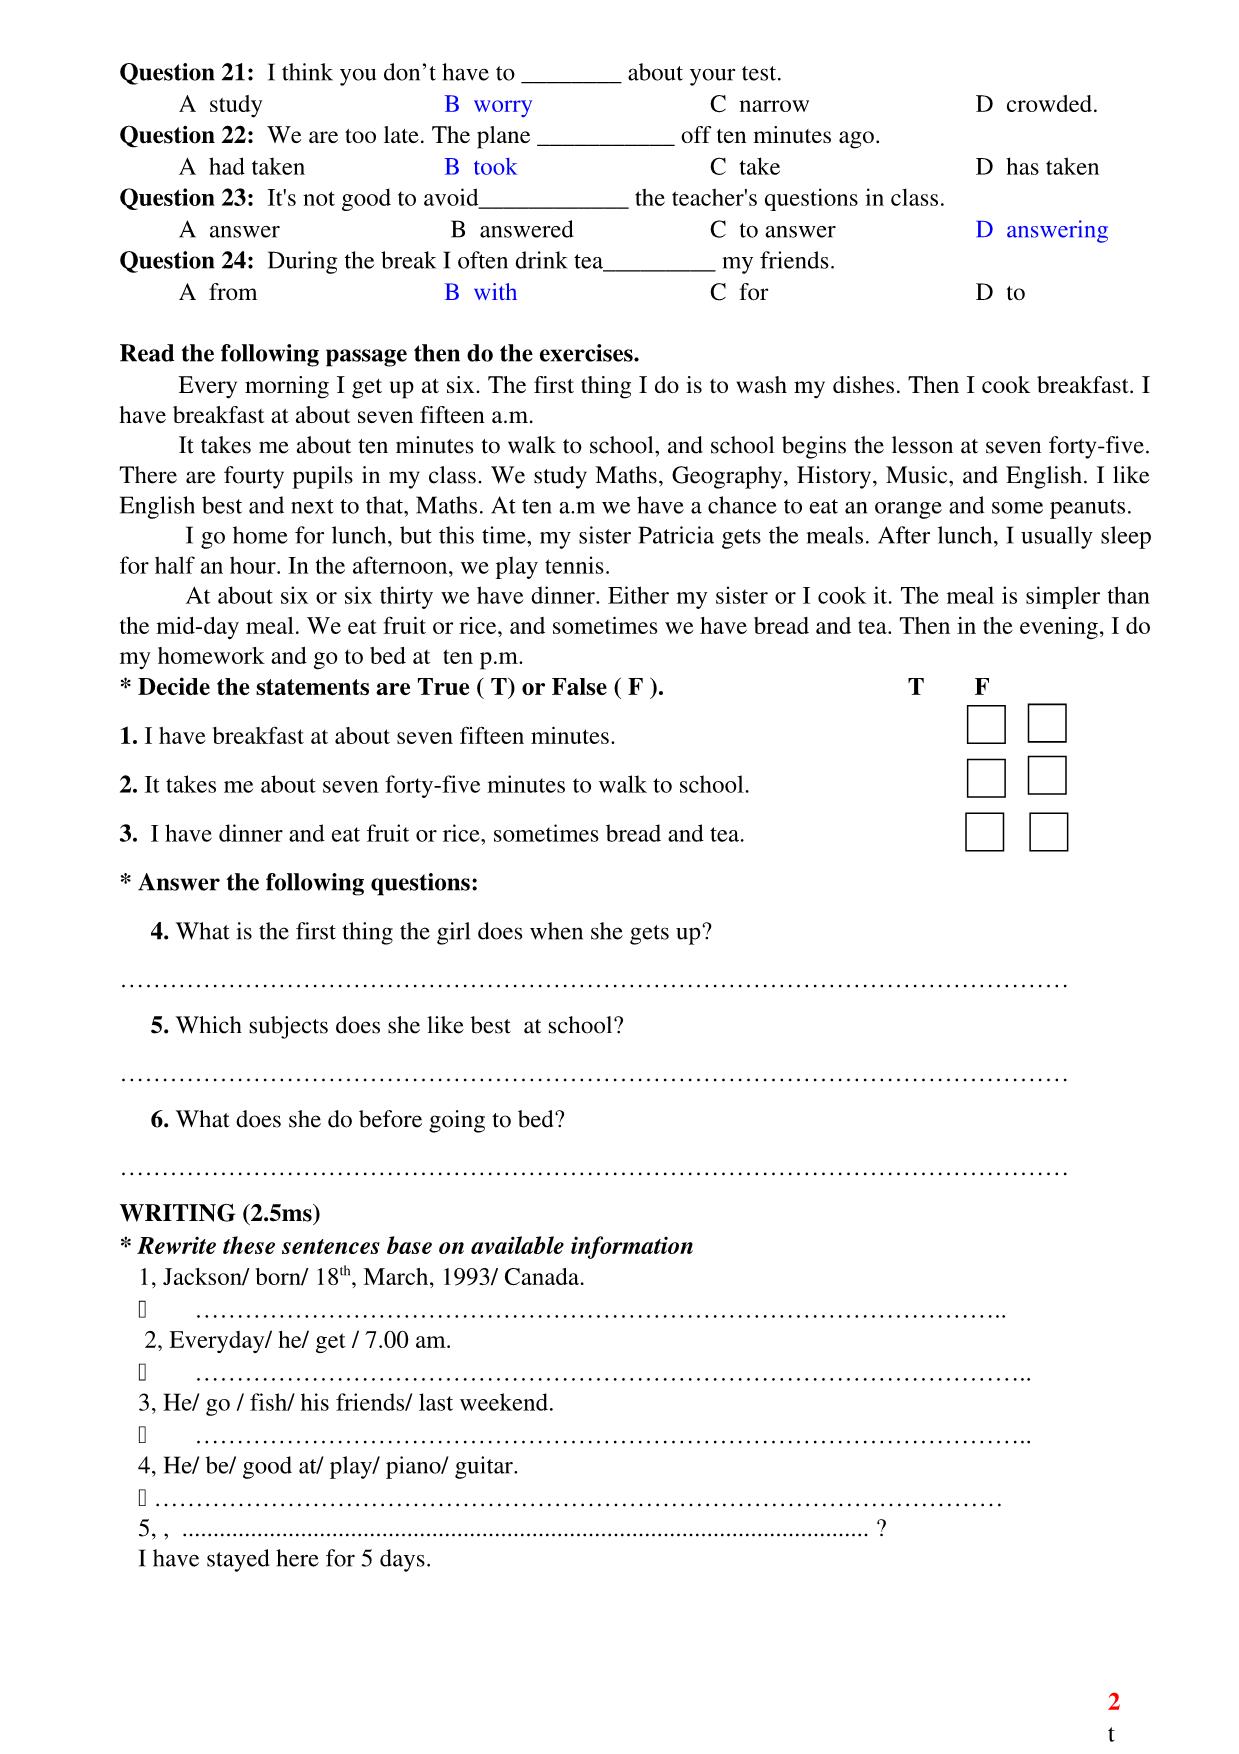 Ôn tập kiểm tra 1 tiết lần 1 môn tiếng Anh Lớp 10 - Học kì 1 trang 2